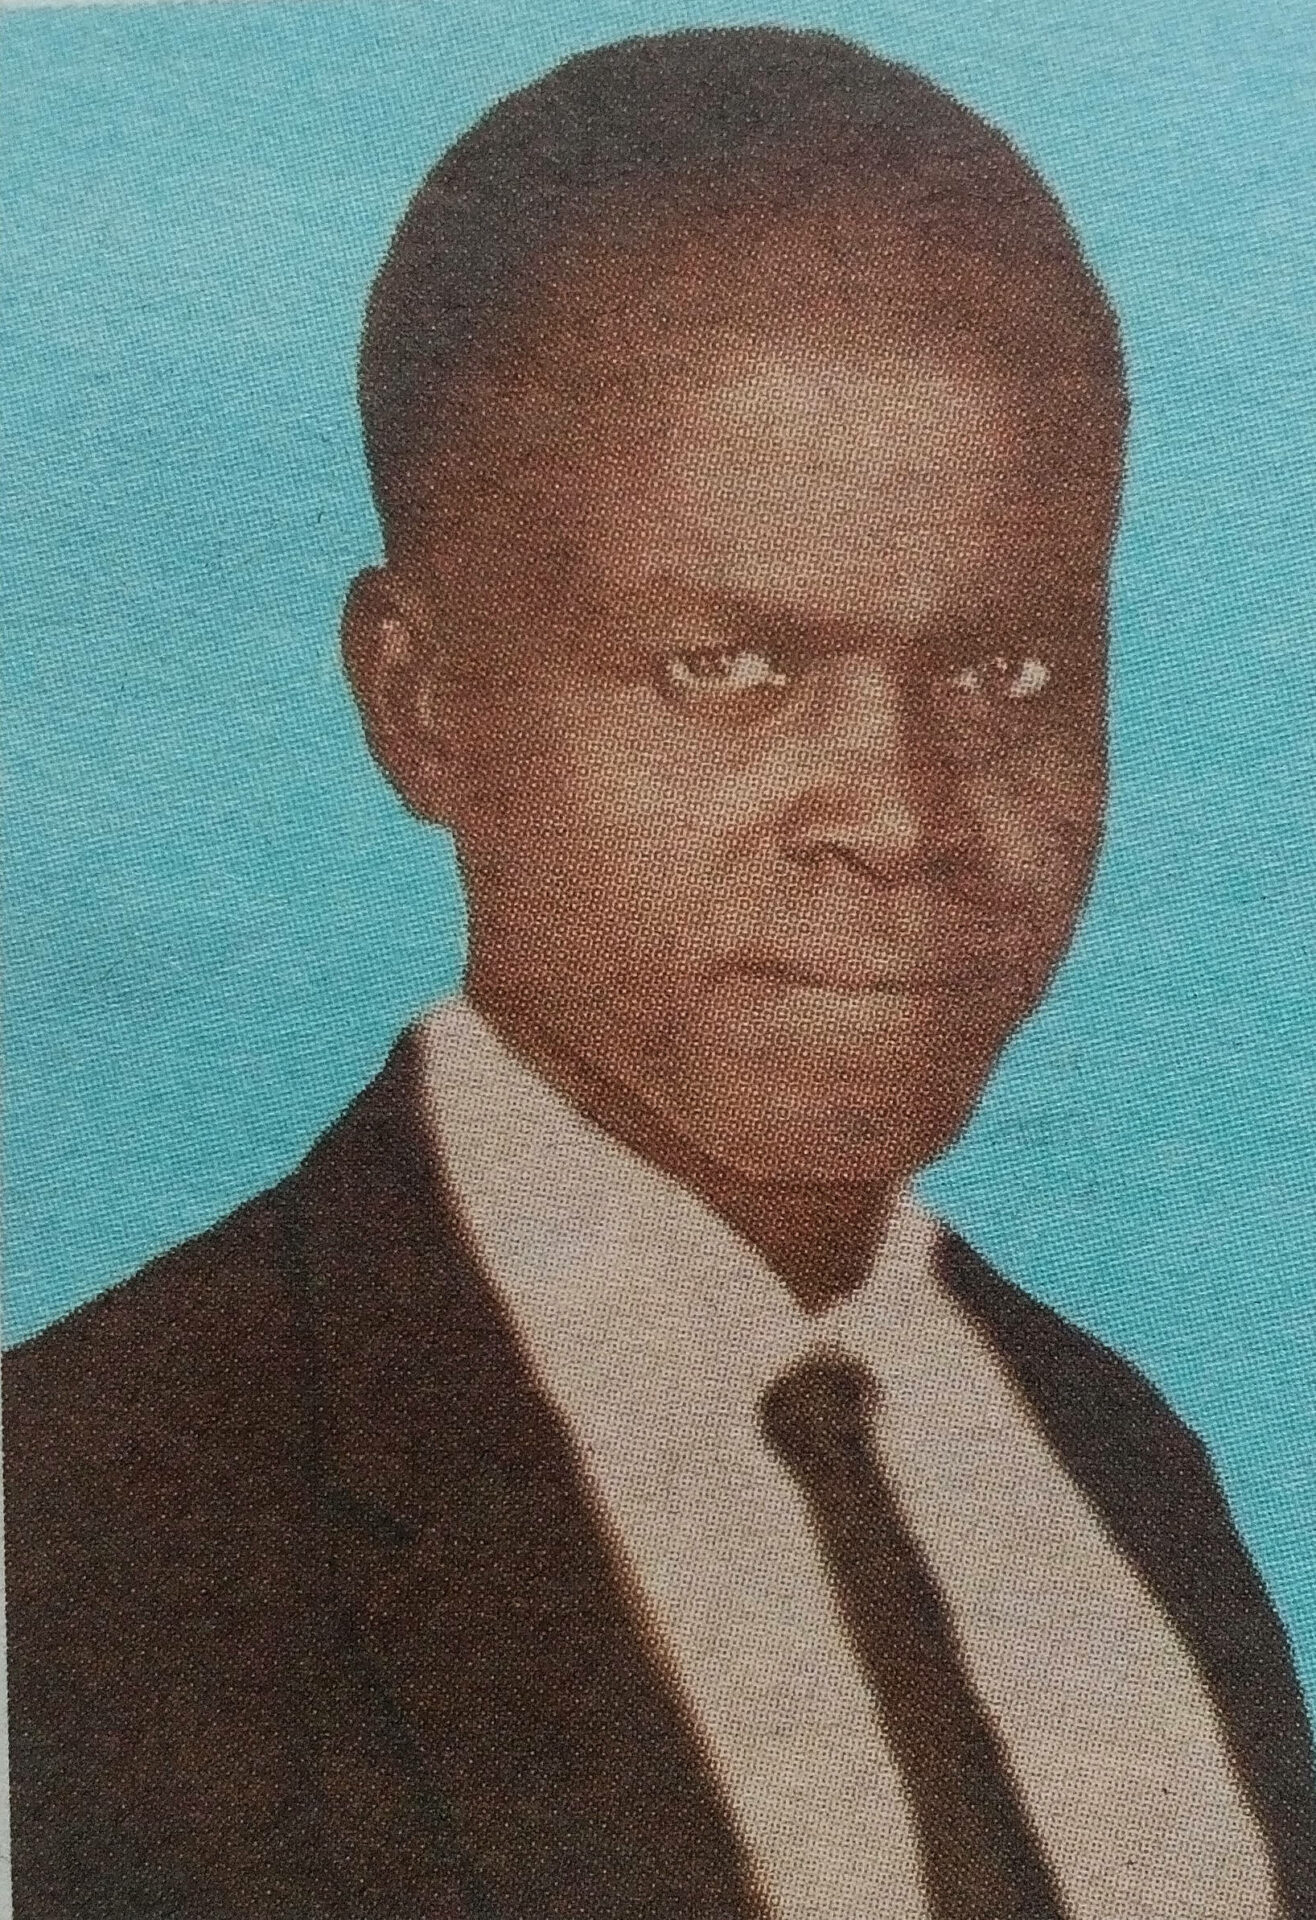 Obituary Image of Jeremiah Lumidi Ndula